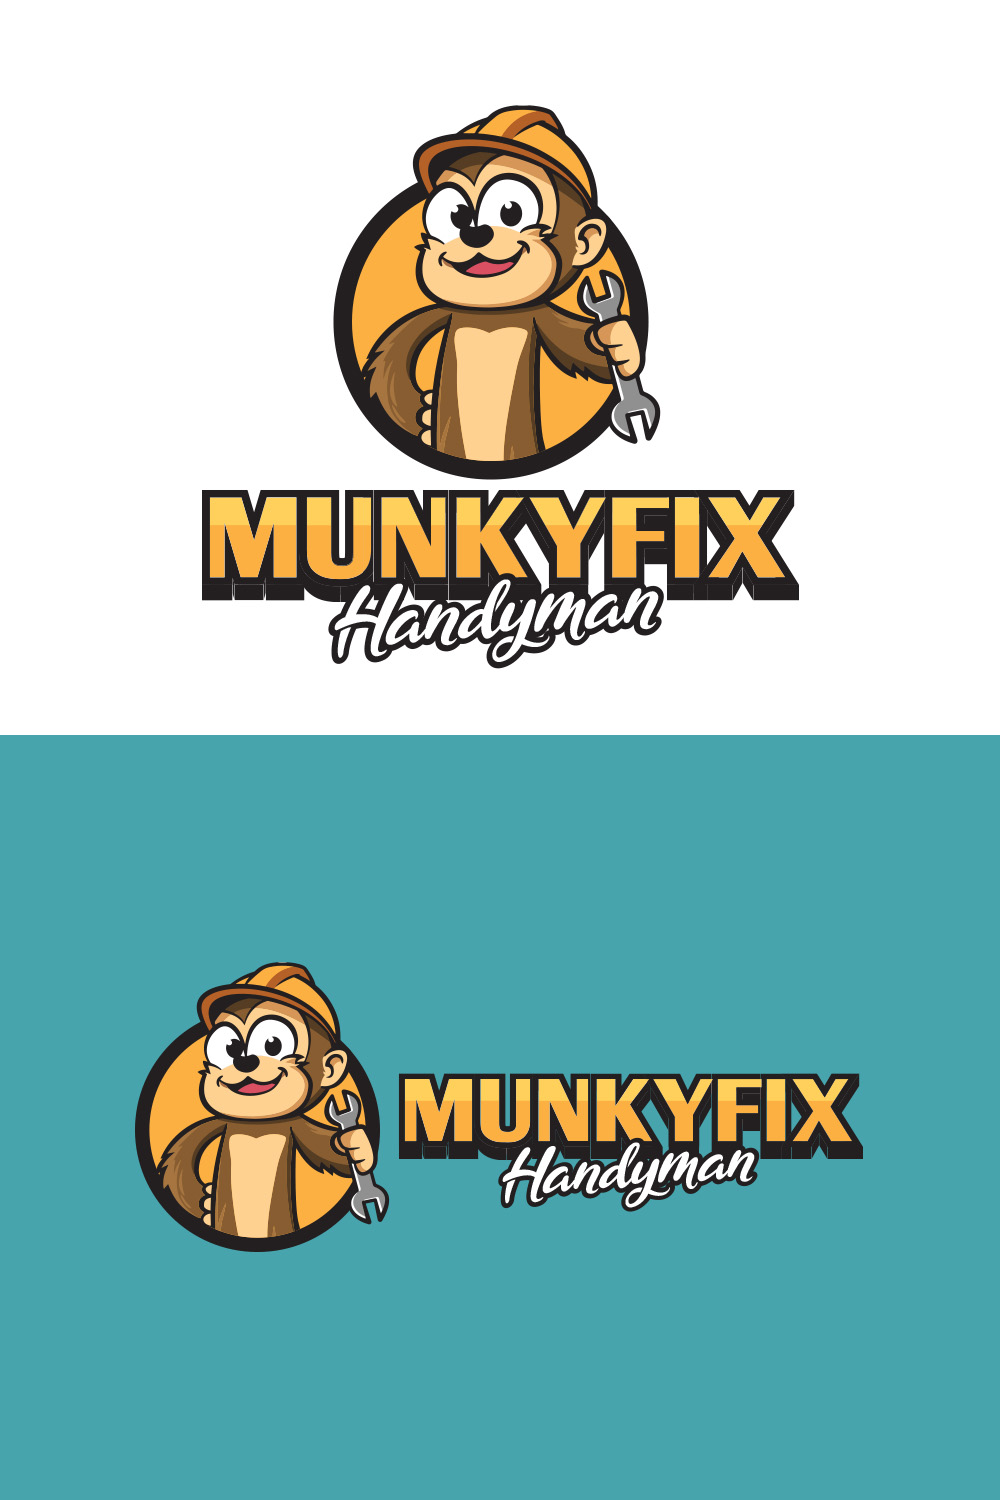 Monkey Handyman Logo pinterest preview image.